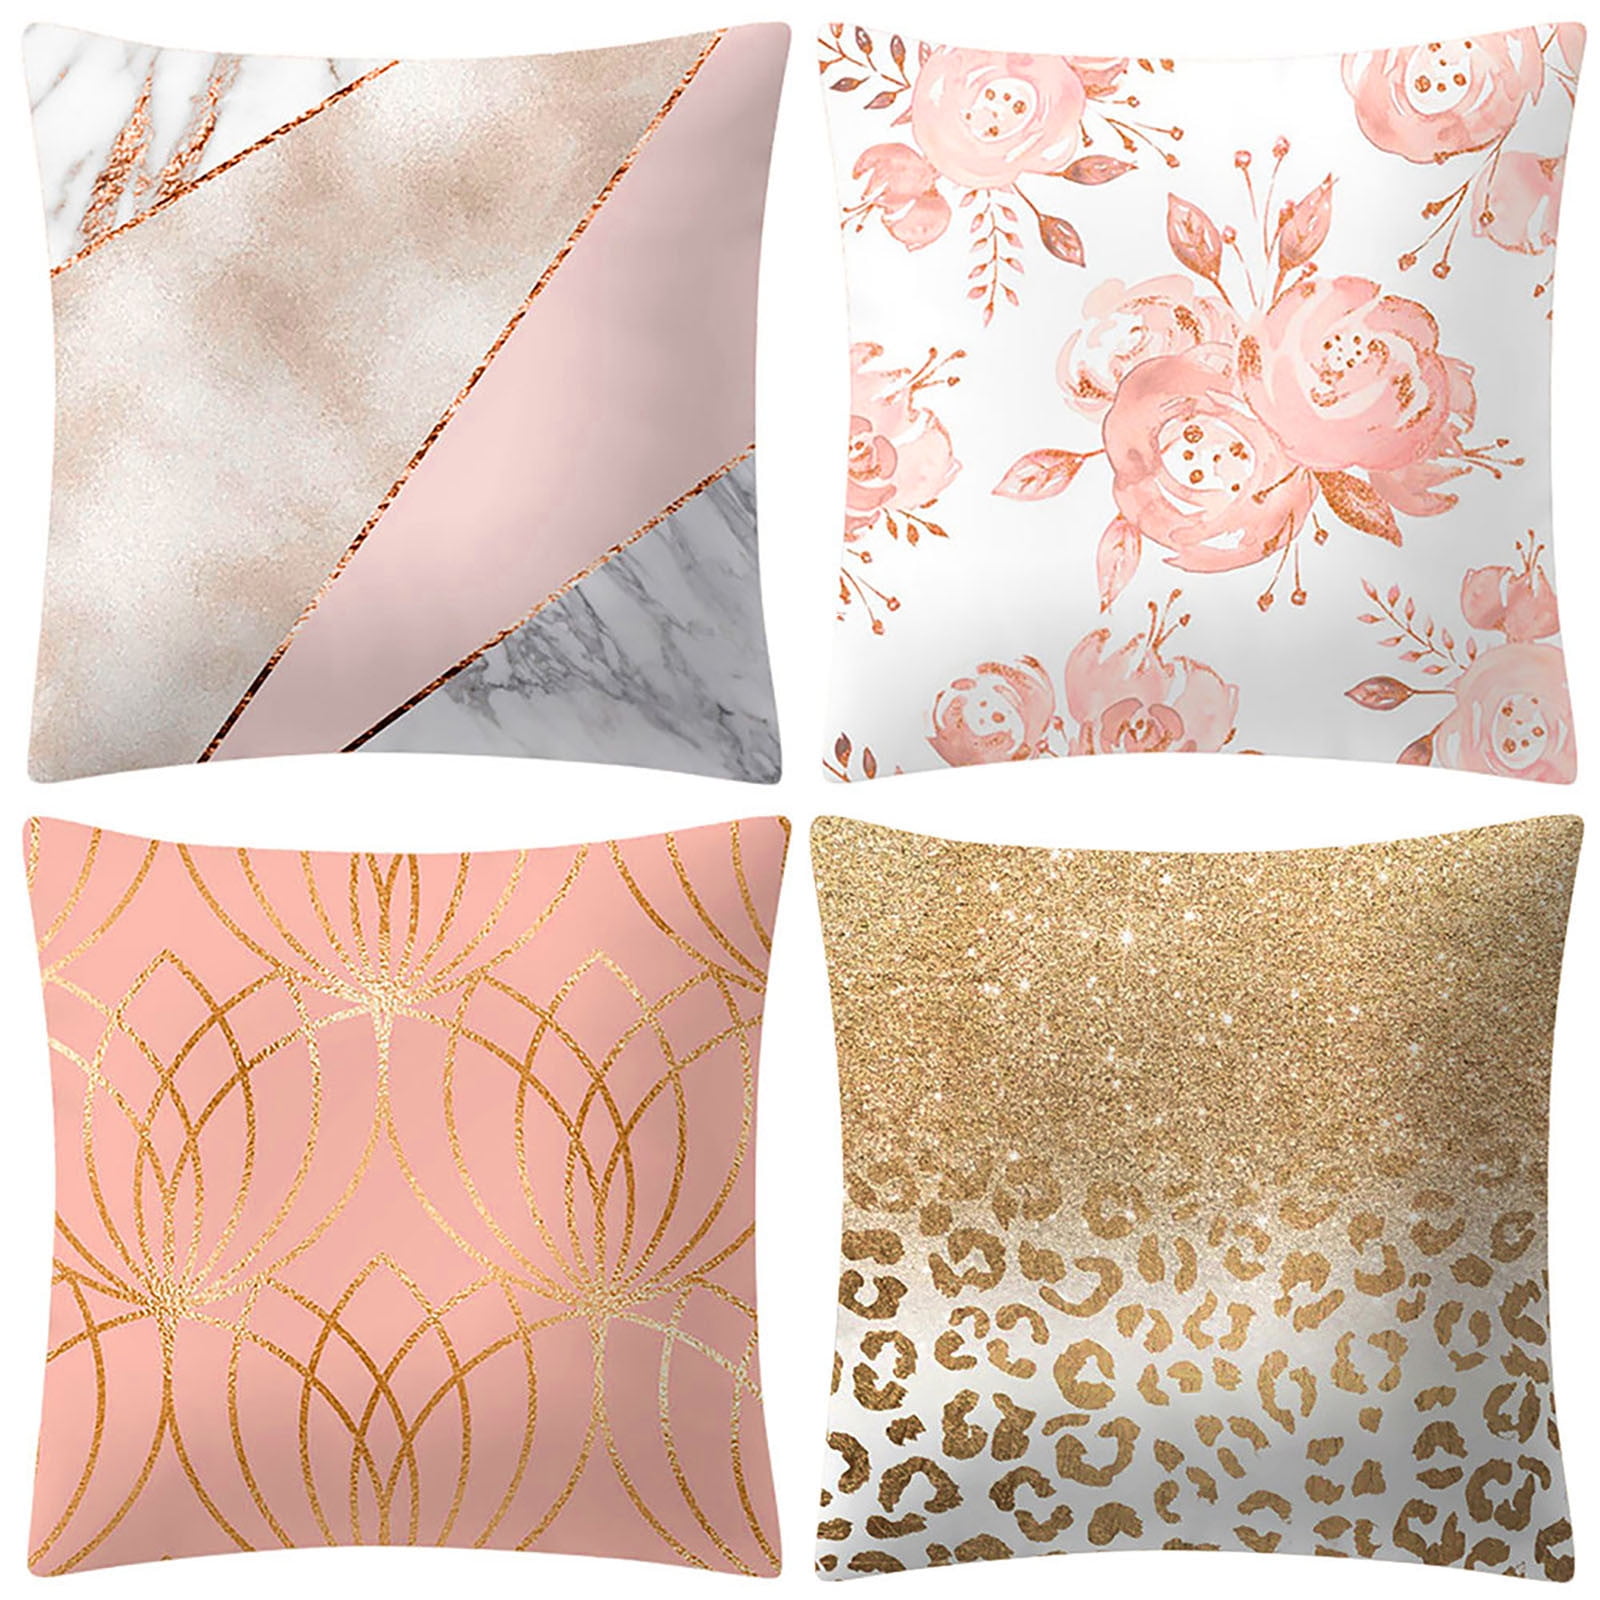 Blush Pink And Rose Gold Metallic Leaf Print Cushion